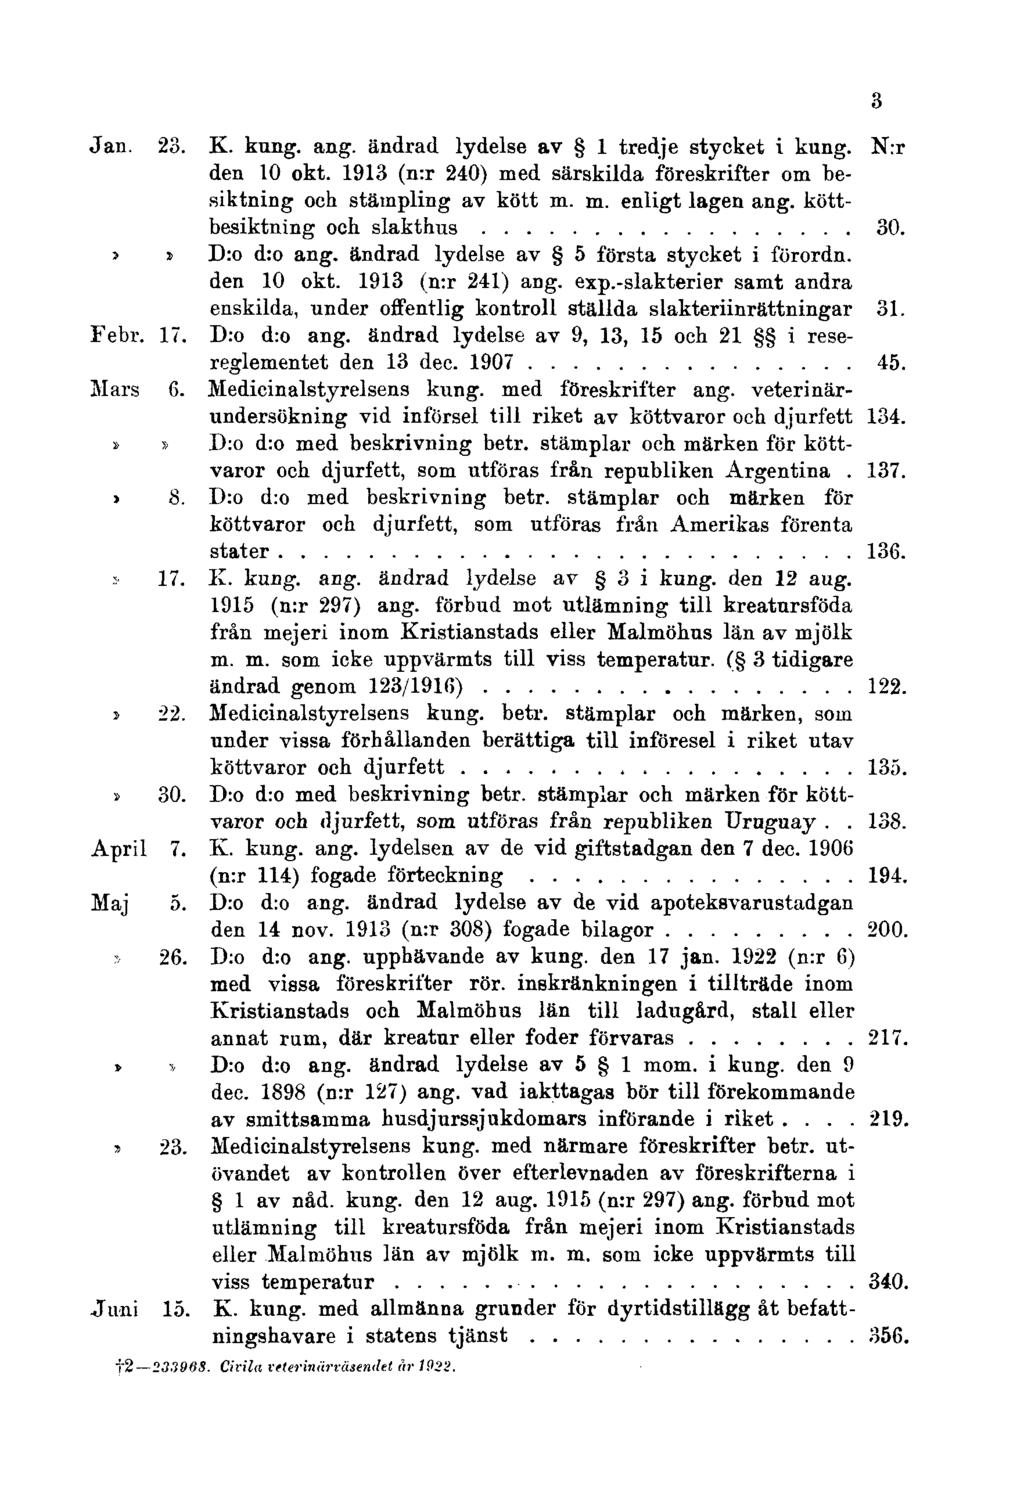 Jan. 23. K. kung. ang. ändrad lydelse av 1 tredje stycket i kung. N:r den 10 okt. 1913 (n:r 240) med särskilda föreskrifter om besiktning och stämpling av kött m. m. enligt lagen ang.